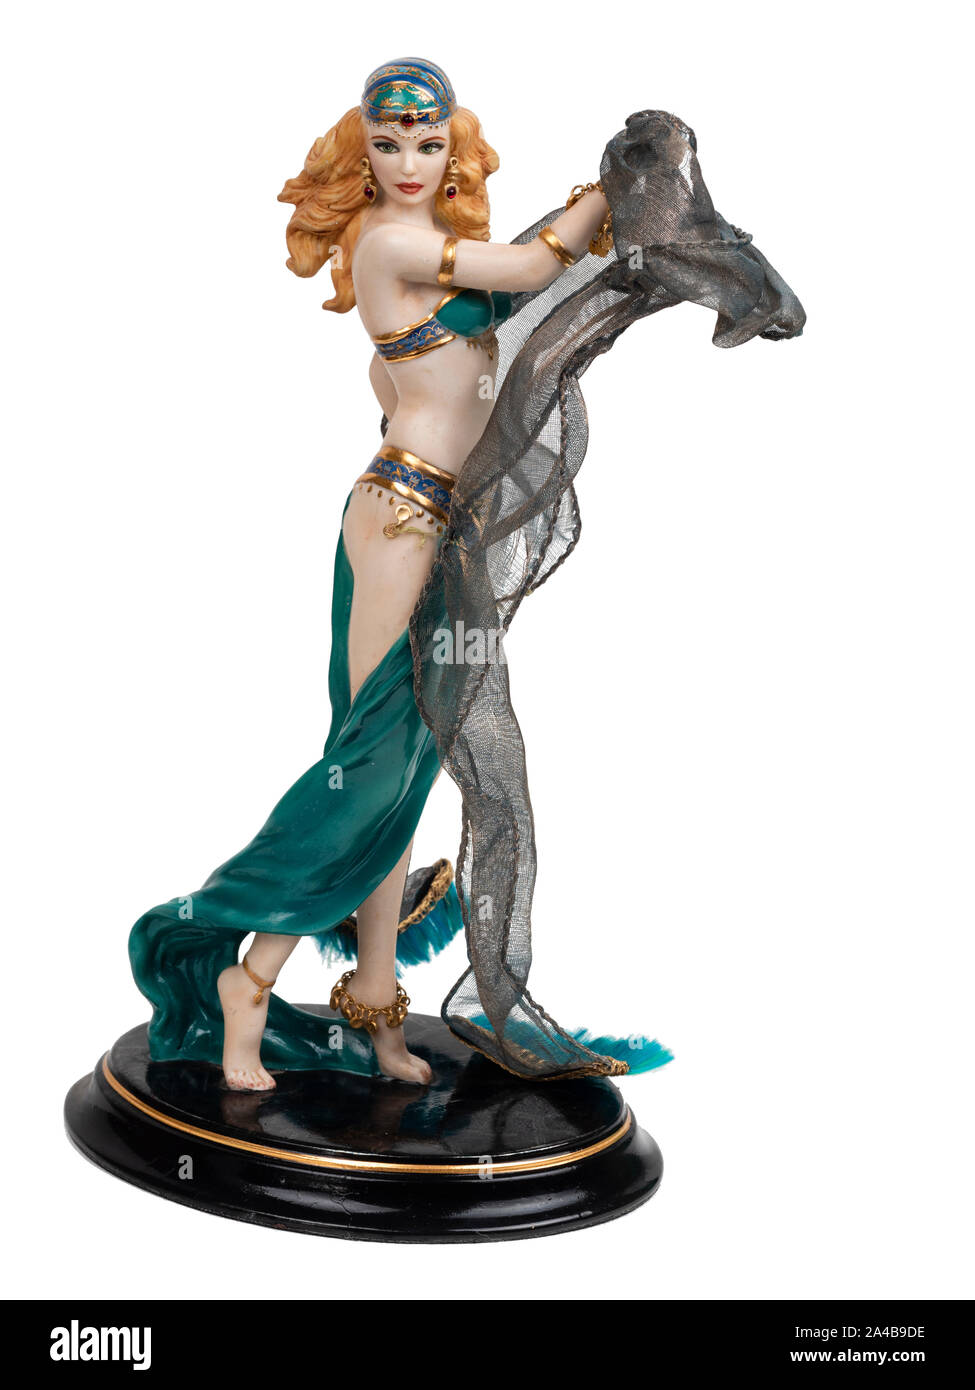 Dipinto a mano modello di porcellana figurina di Salome e La danza dei sette veli su sfondo bianco Foto Stock